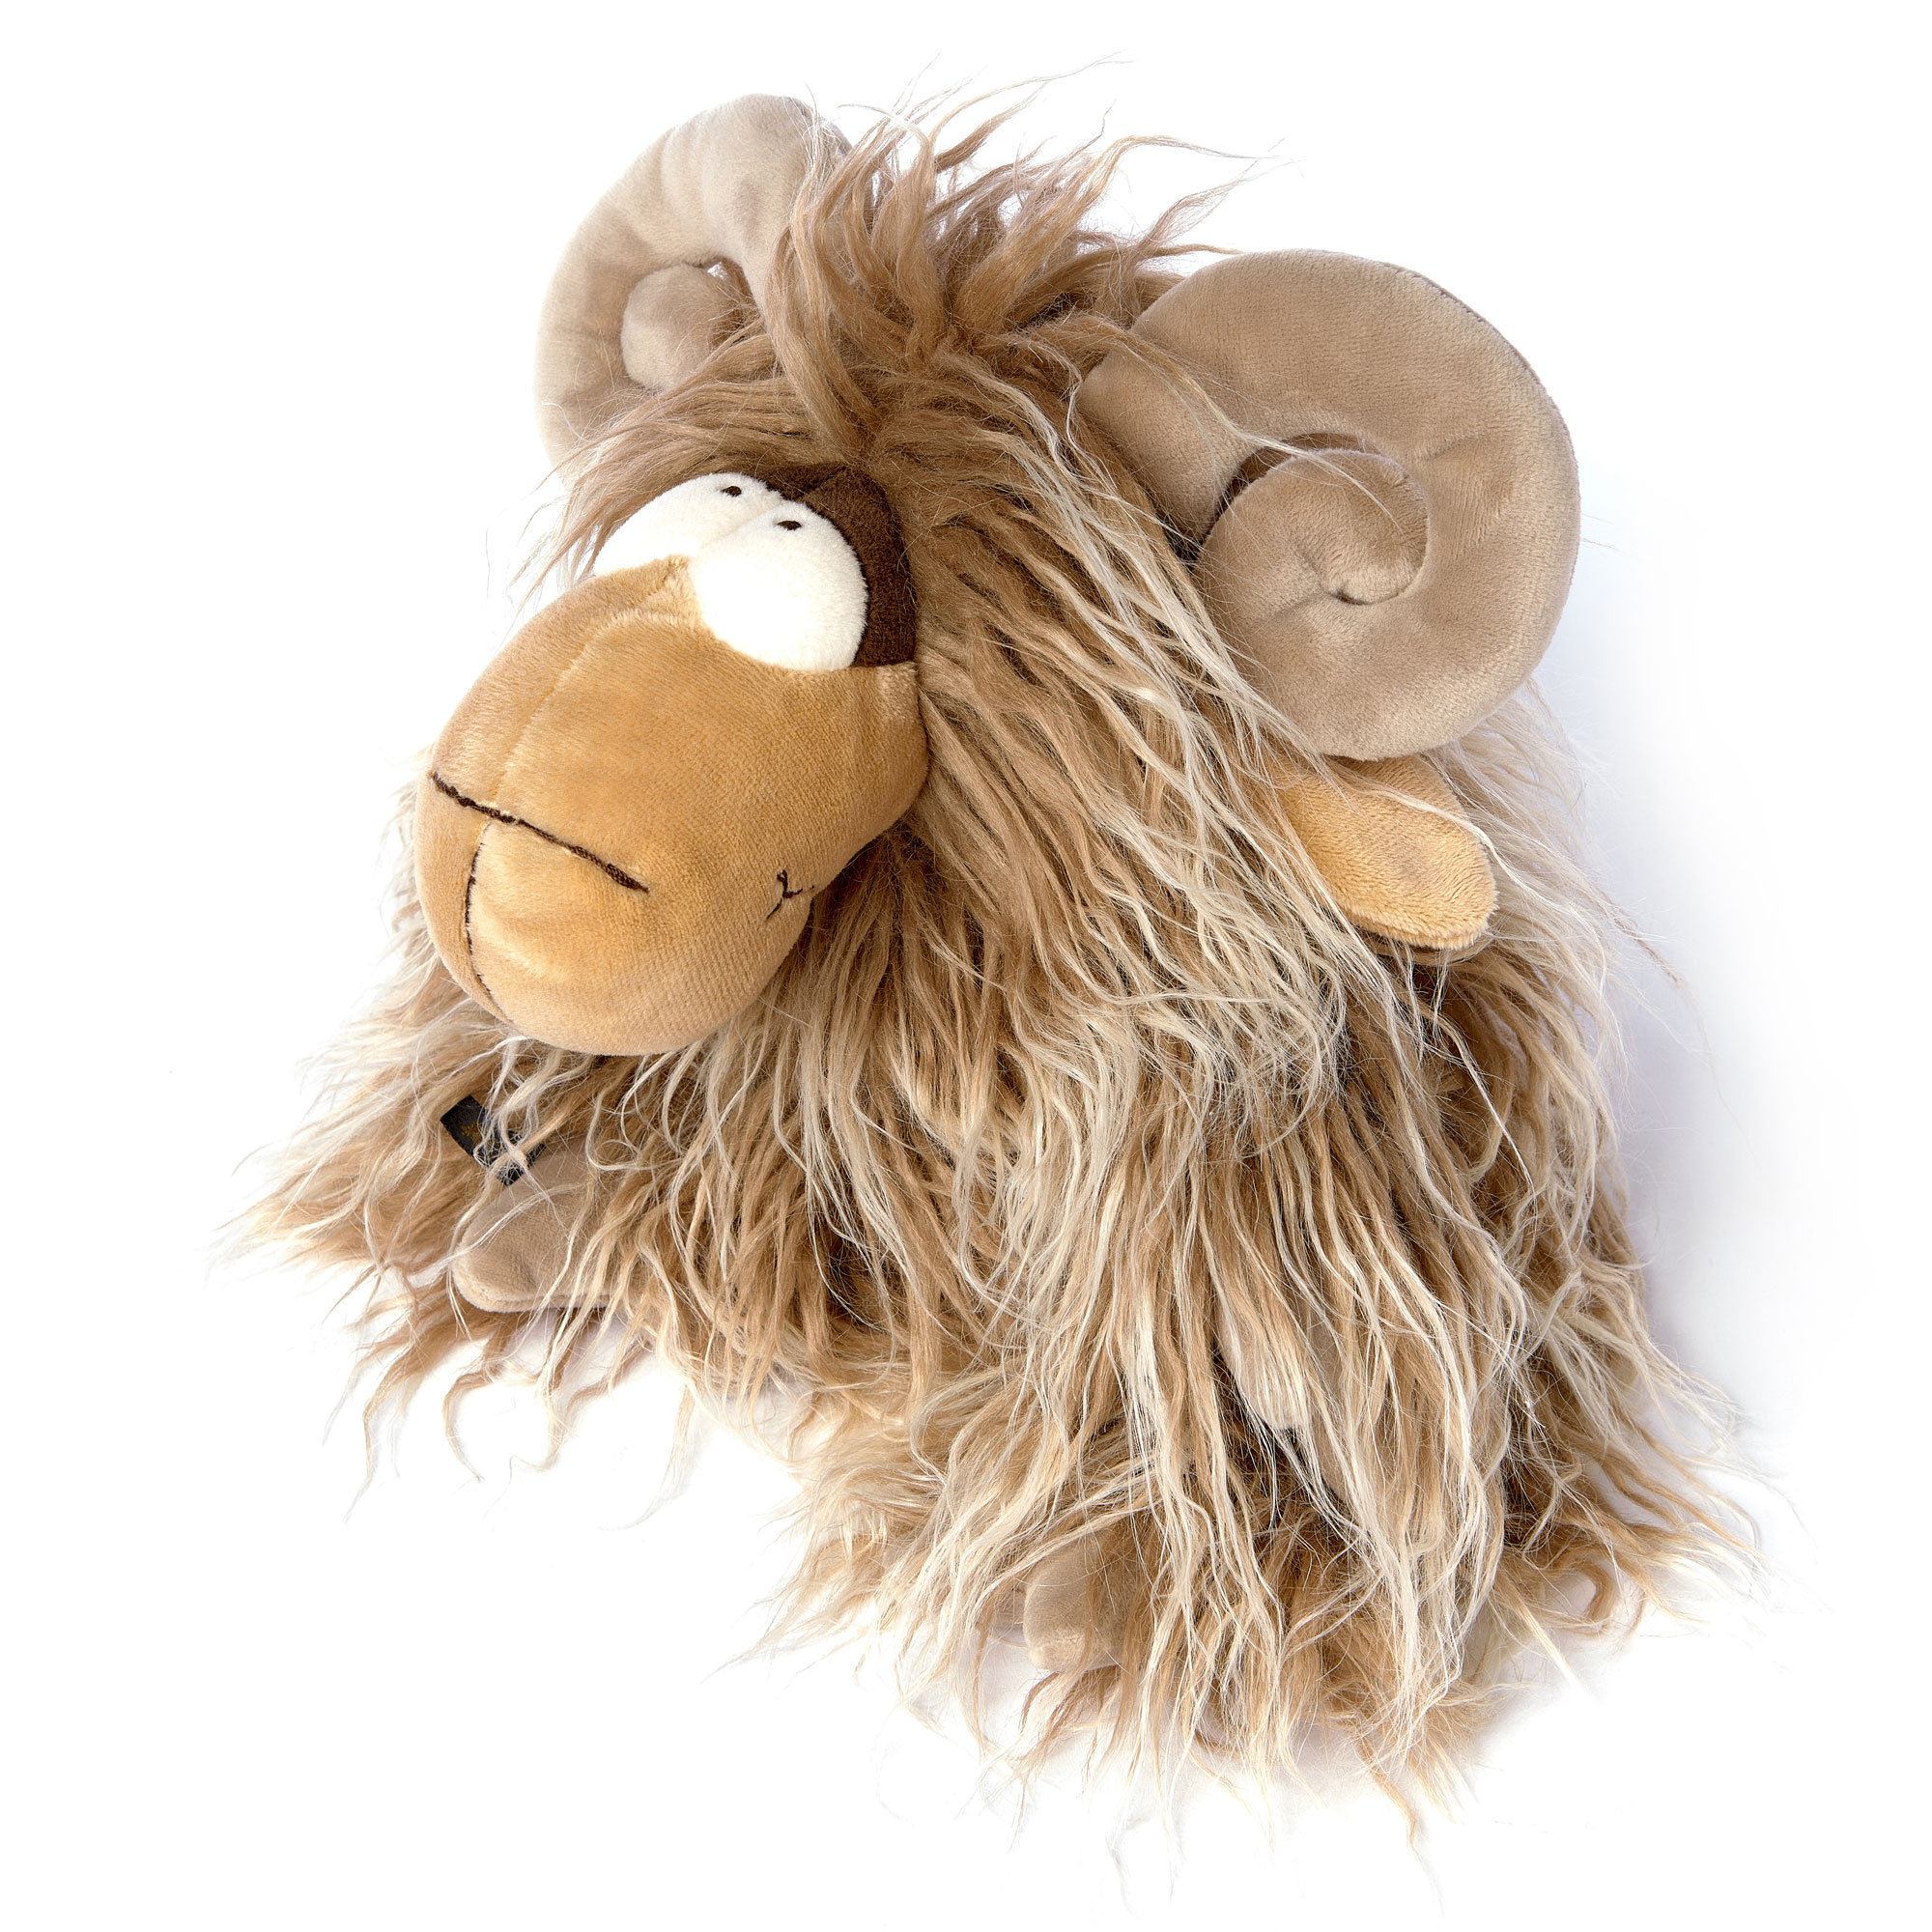 Plush toy ram sheep Moufflon Muff, Beasts collection